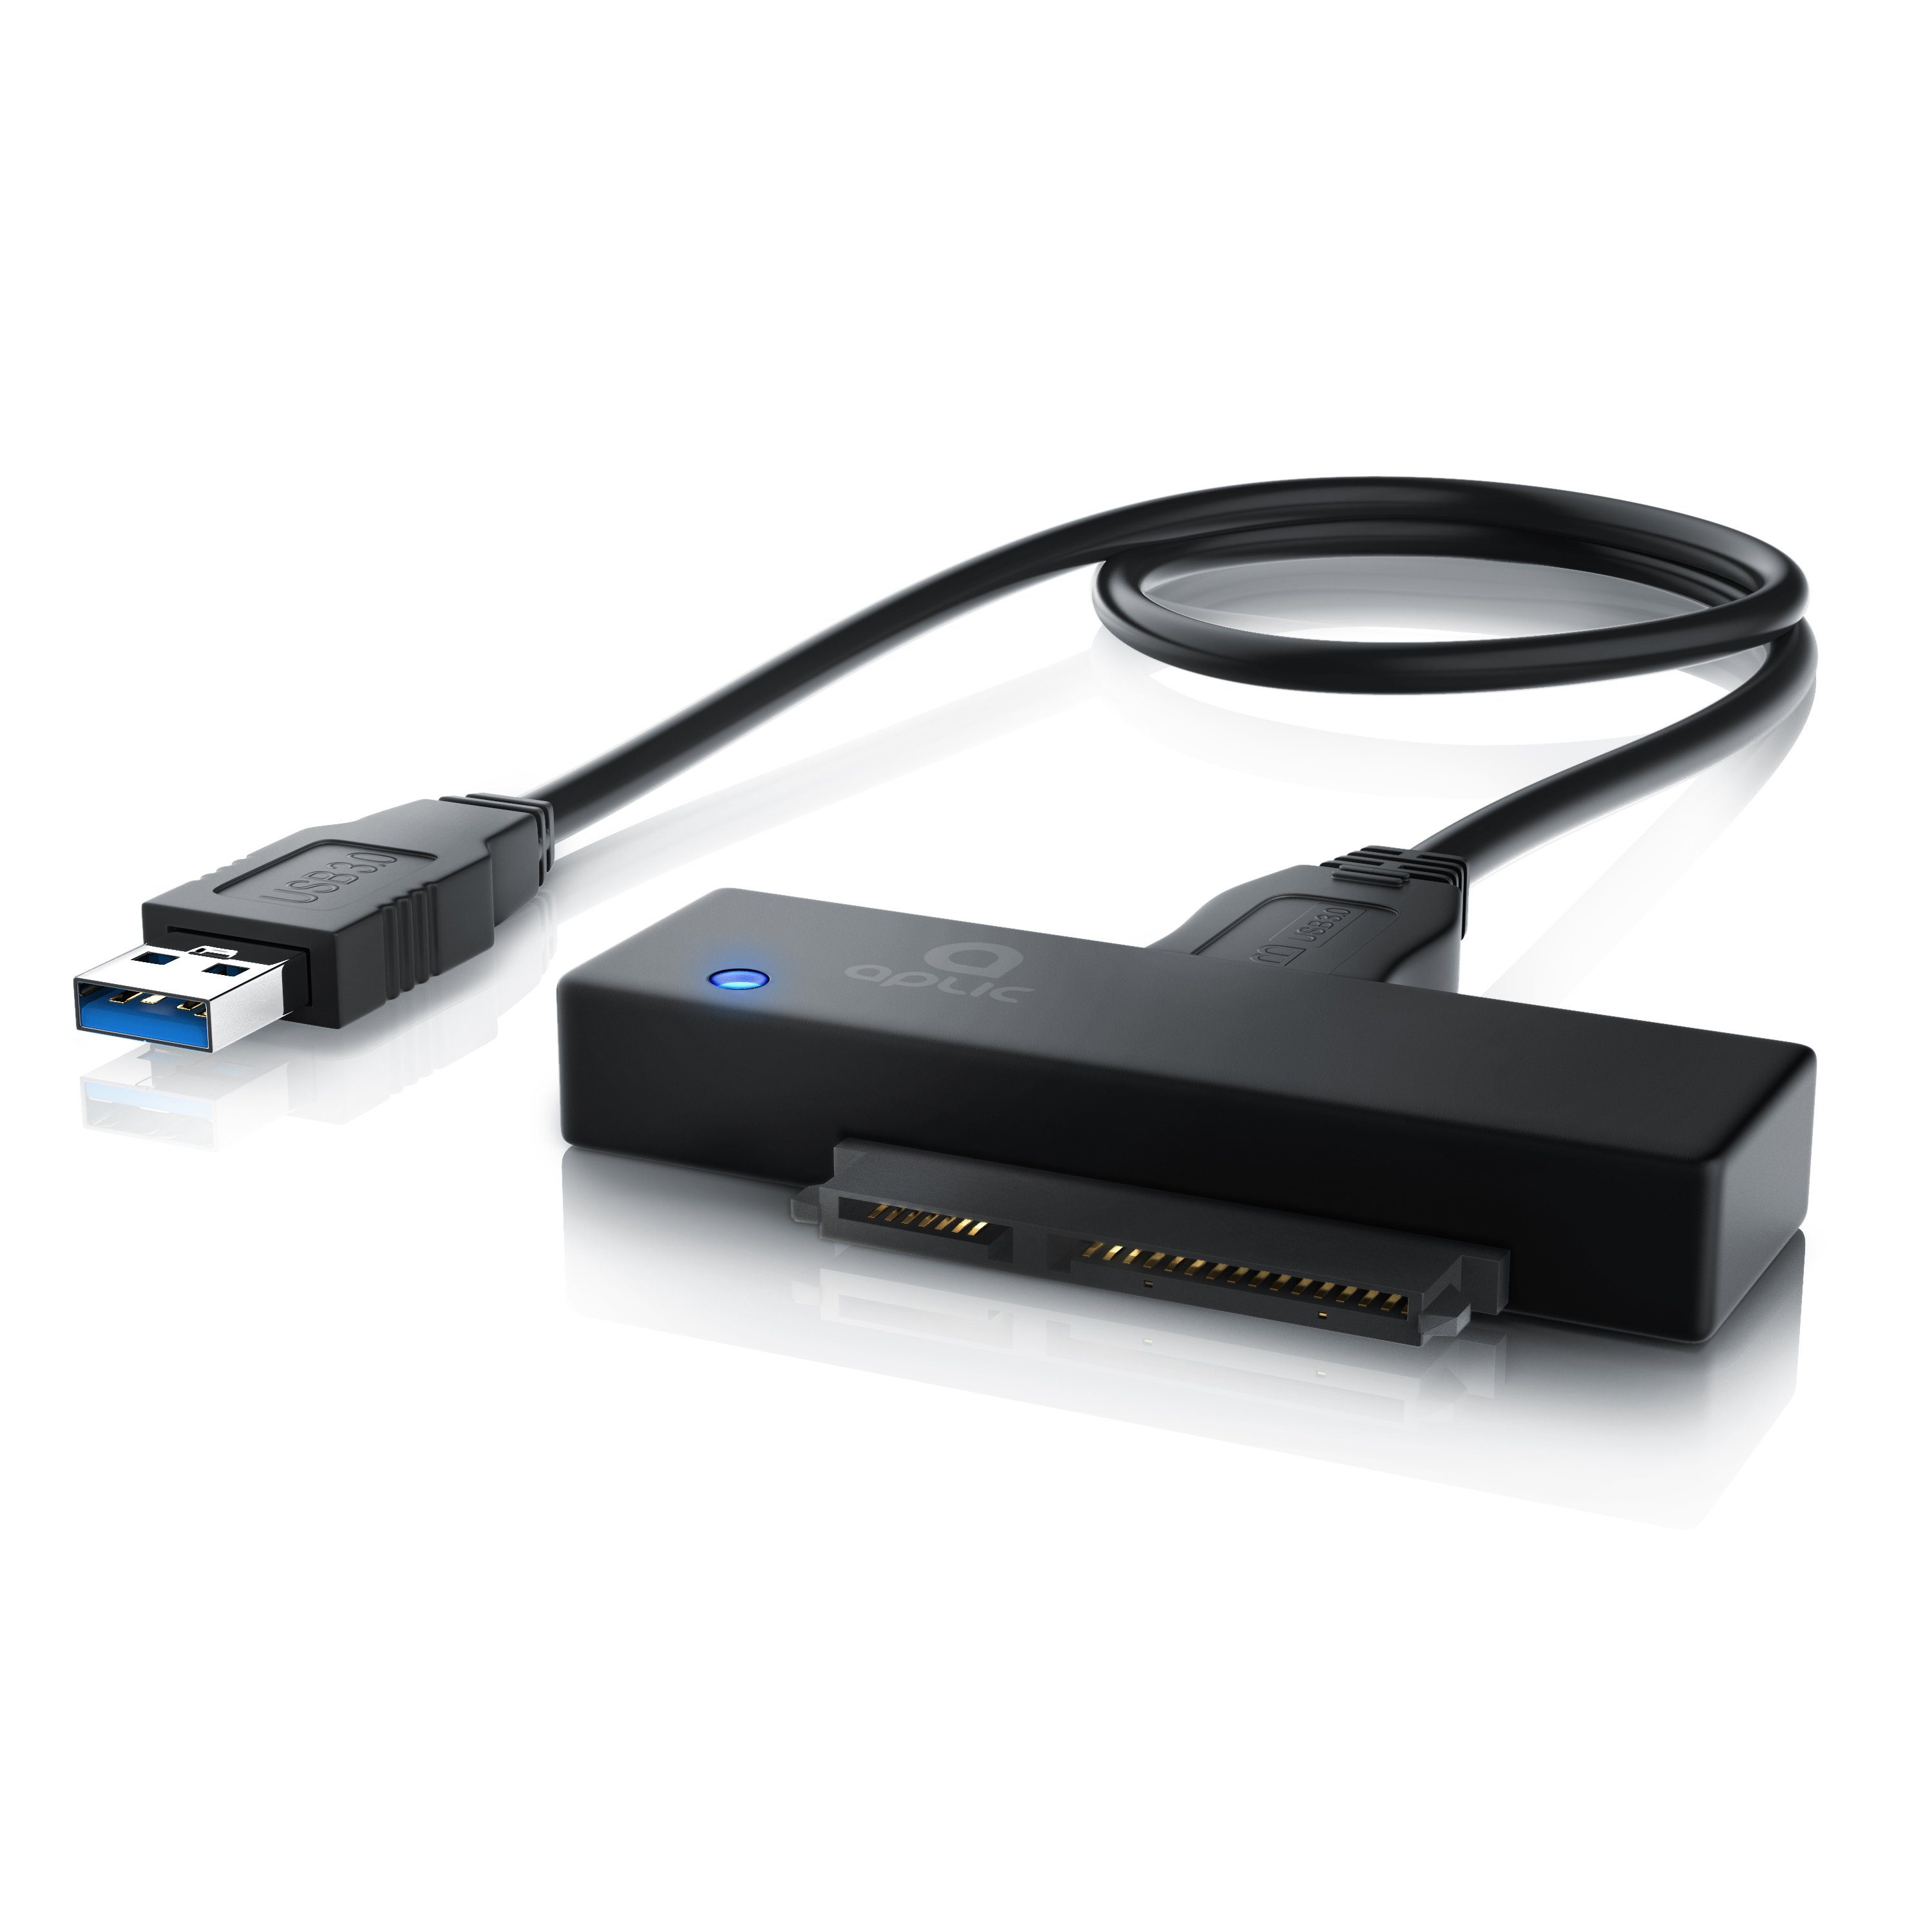 Aplic Computer-Adapter, USB 3.0 zu SATA Konverter Kabel ohne Netzteil -  SATA 1/2/3 Festplatten & Laufwerke - UASP online kaufen | OTTO